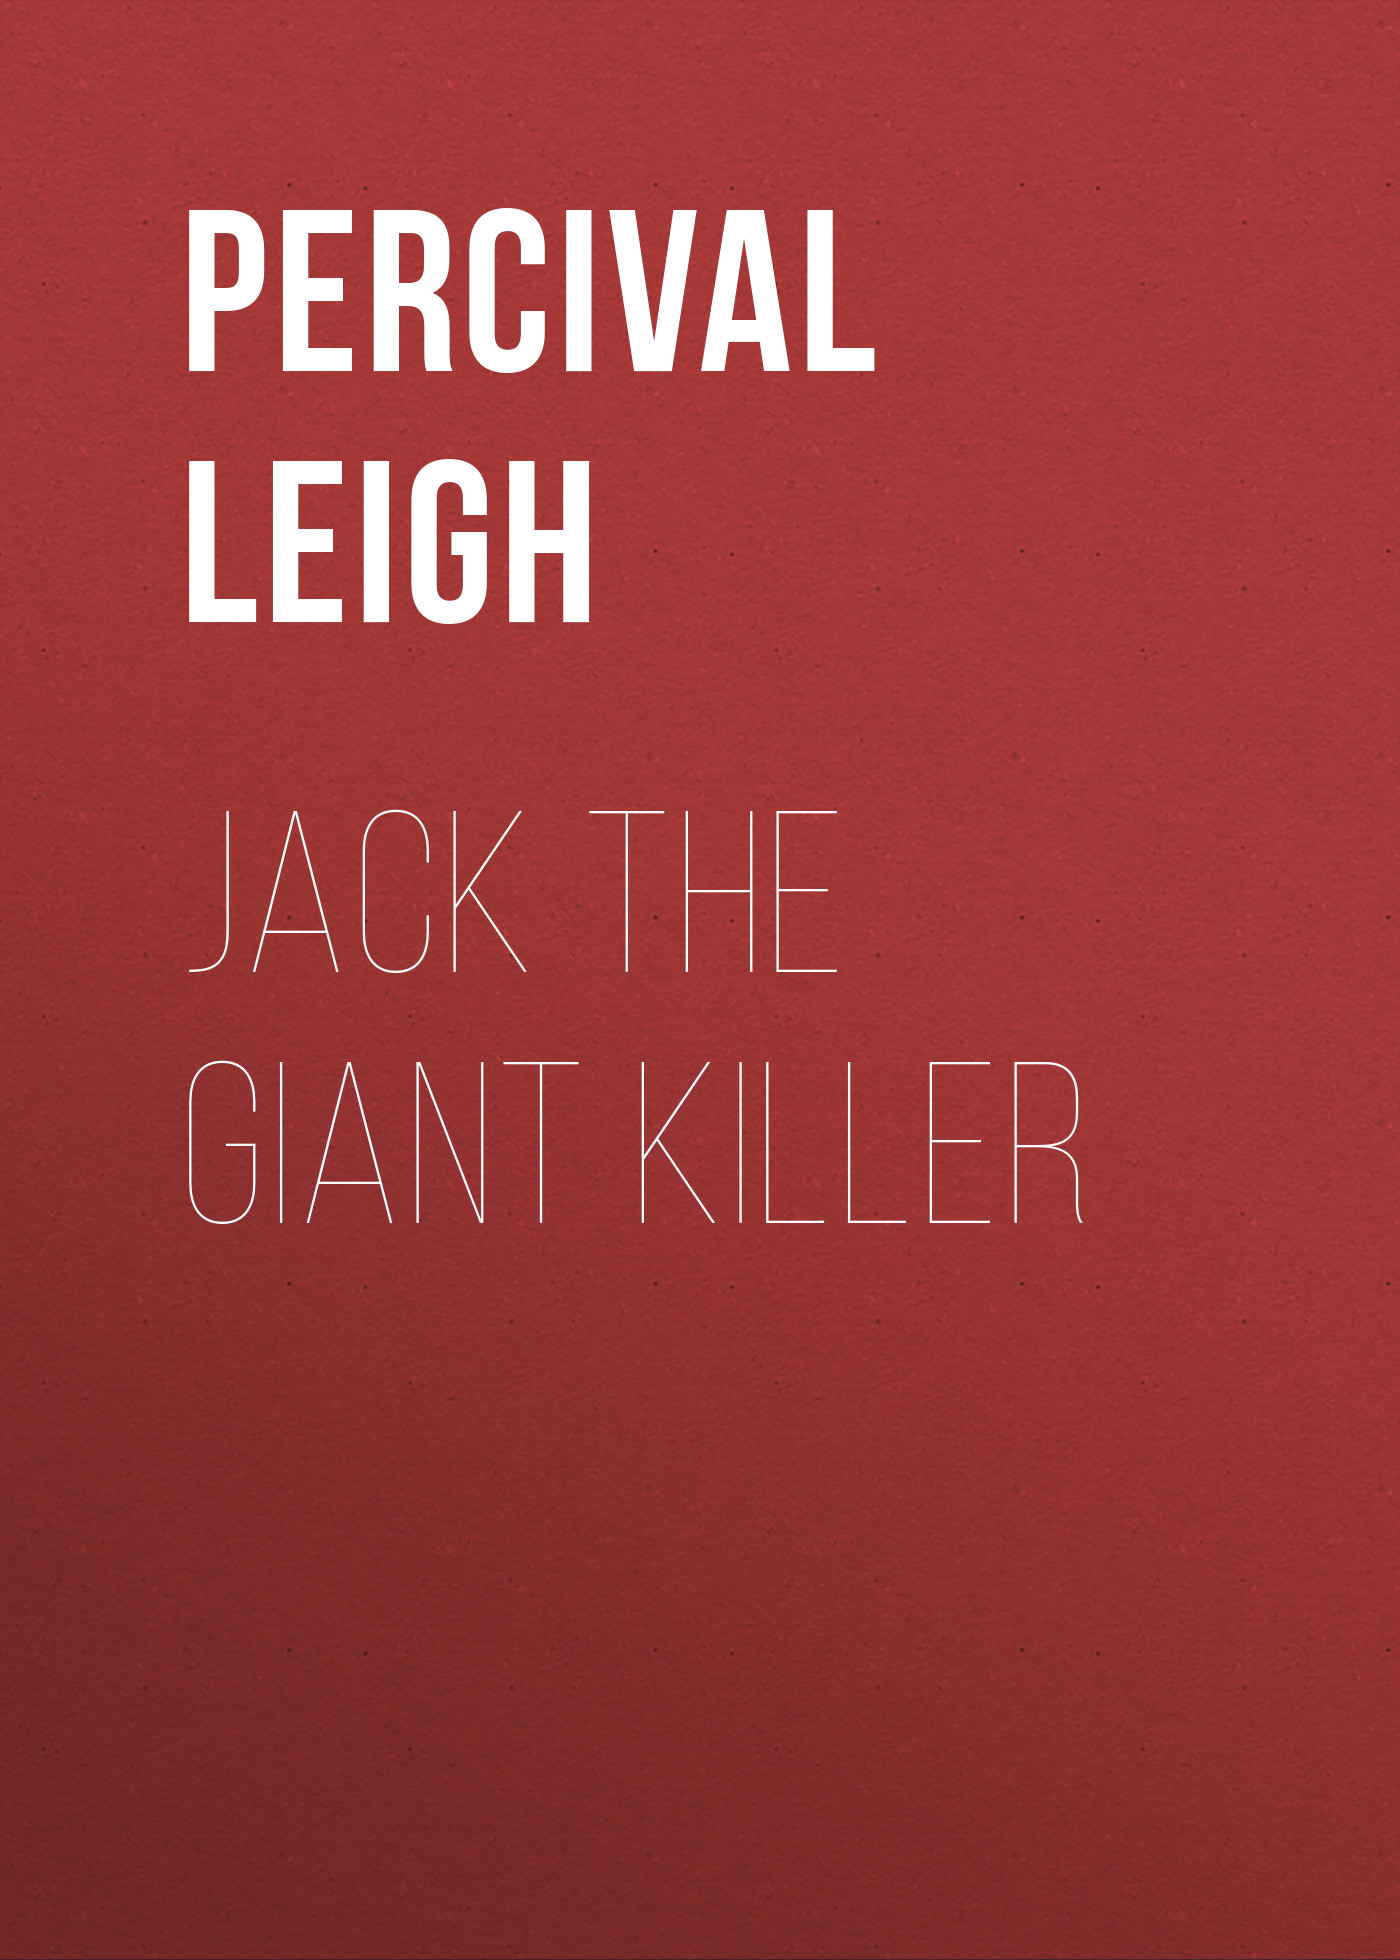 Книга Jack The Giant Killer из серии , созданная Percival Leigh, может относится к жанру Зарубежная классика. Стоимость электронной книги Jack The Giant Killer с идентификатором 23155147 составляет 5.99 руб.